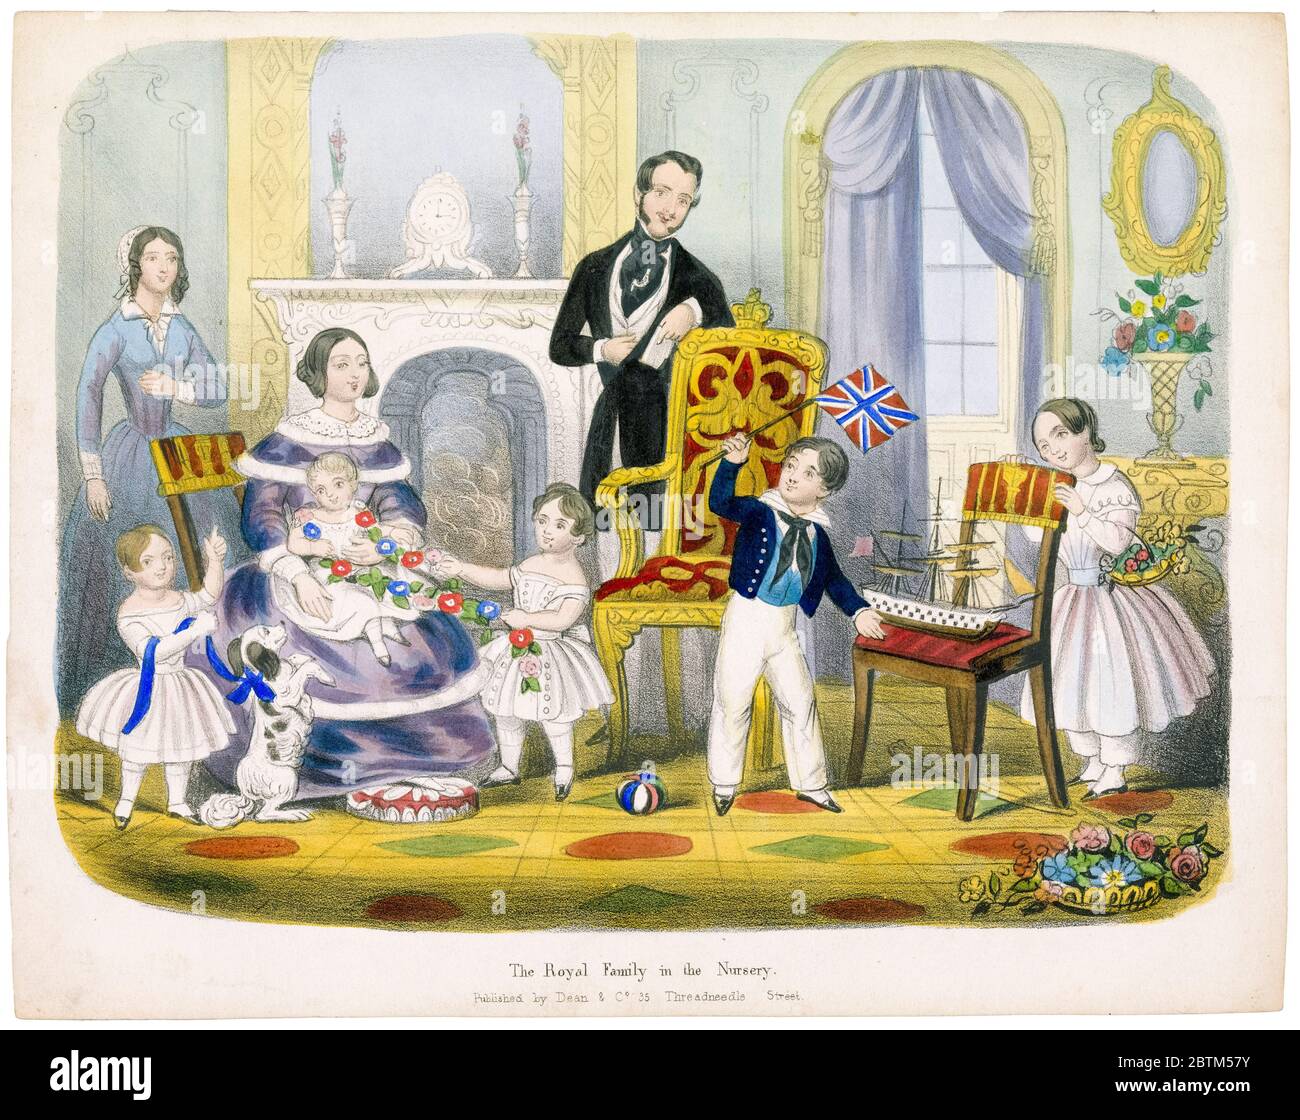 Famille royale dans la pépinière : Reine Victoria, Prince Albert, et leurs enfants, imprimé par Dean & Co, vers 1845 Banque D'Images